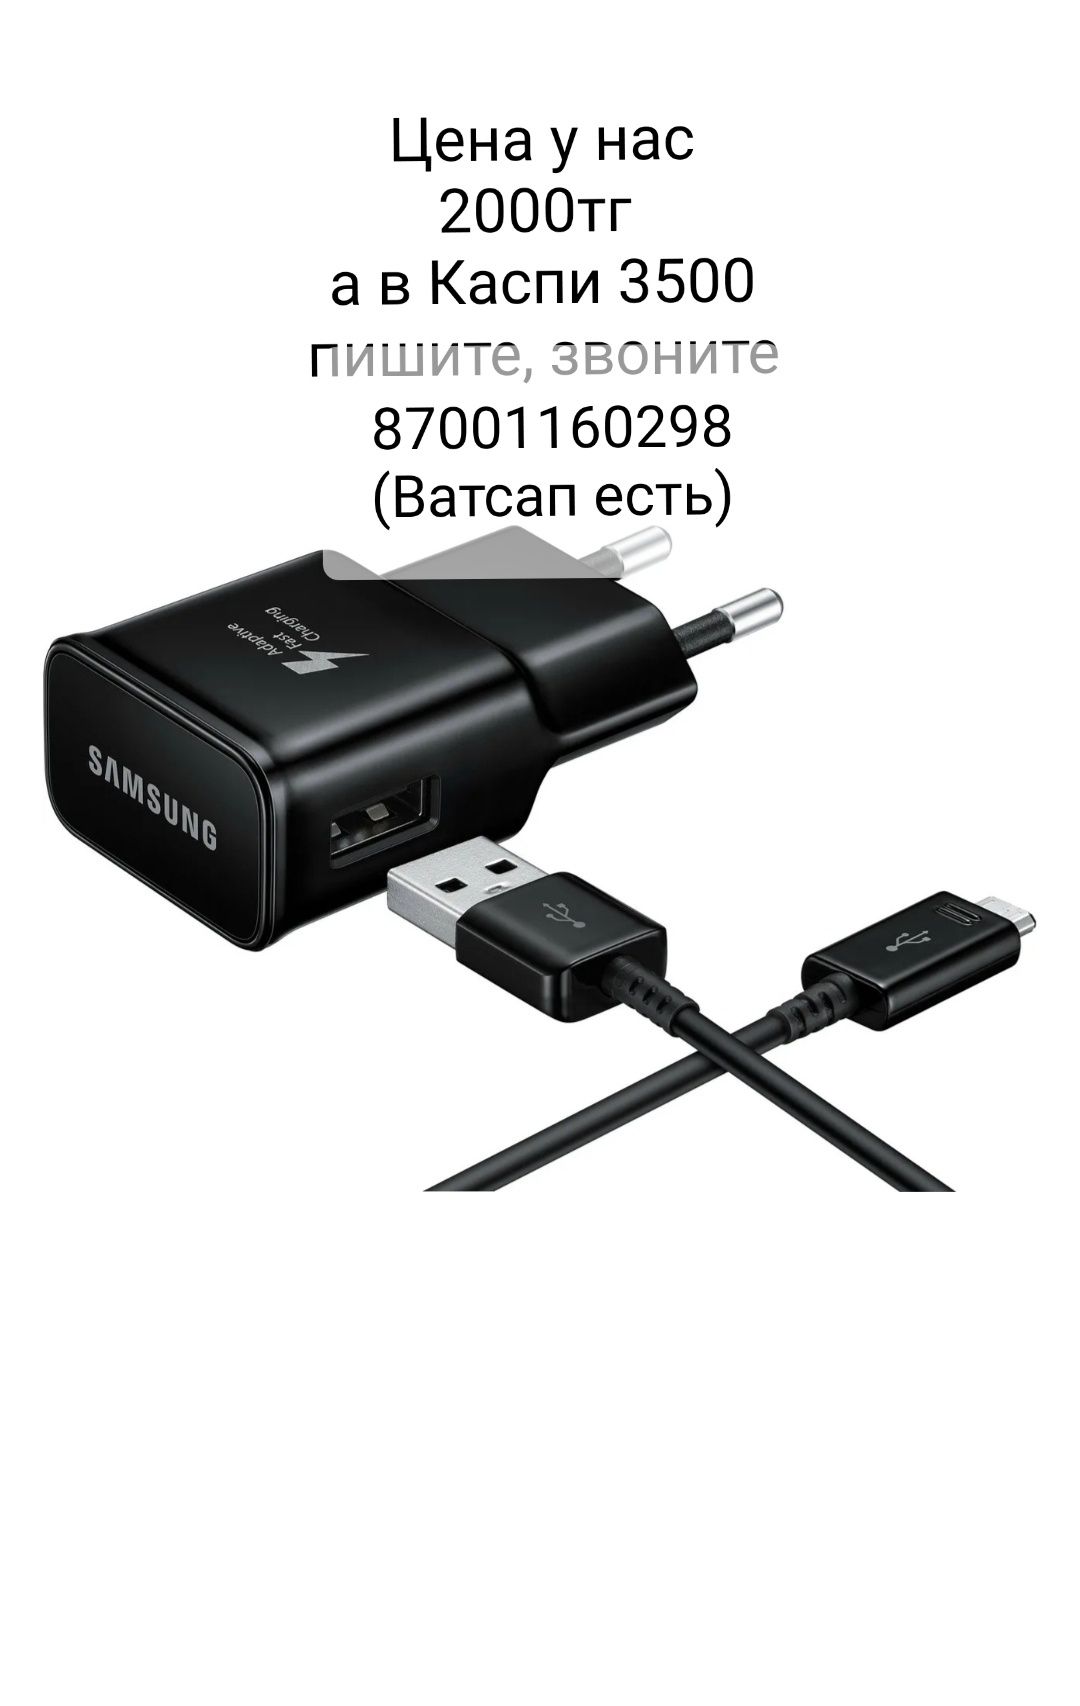 Зарядное устройство Samsung EP-TA200 черный, 2000тг(цена в Каспи 3500)